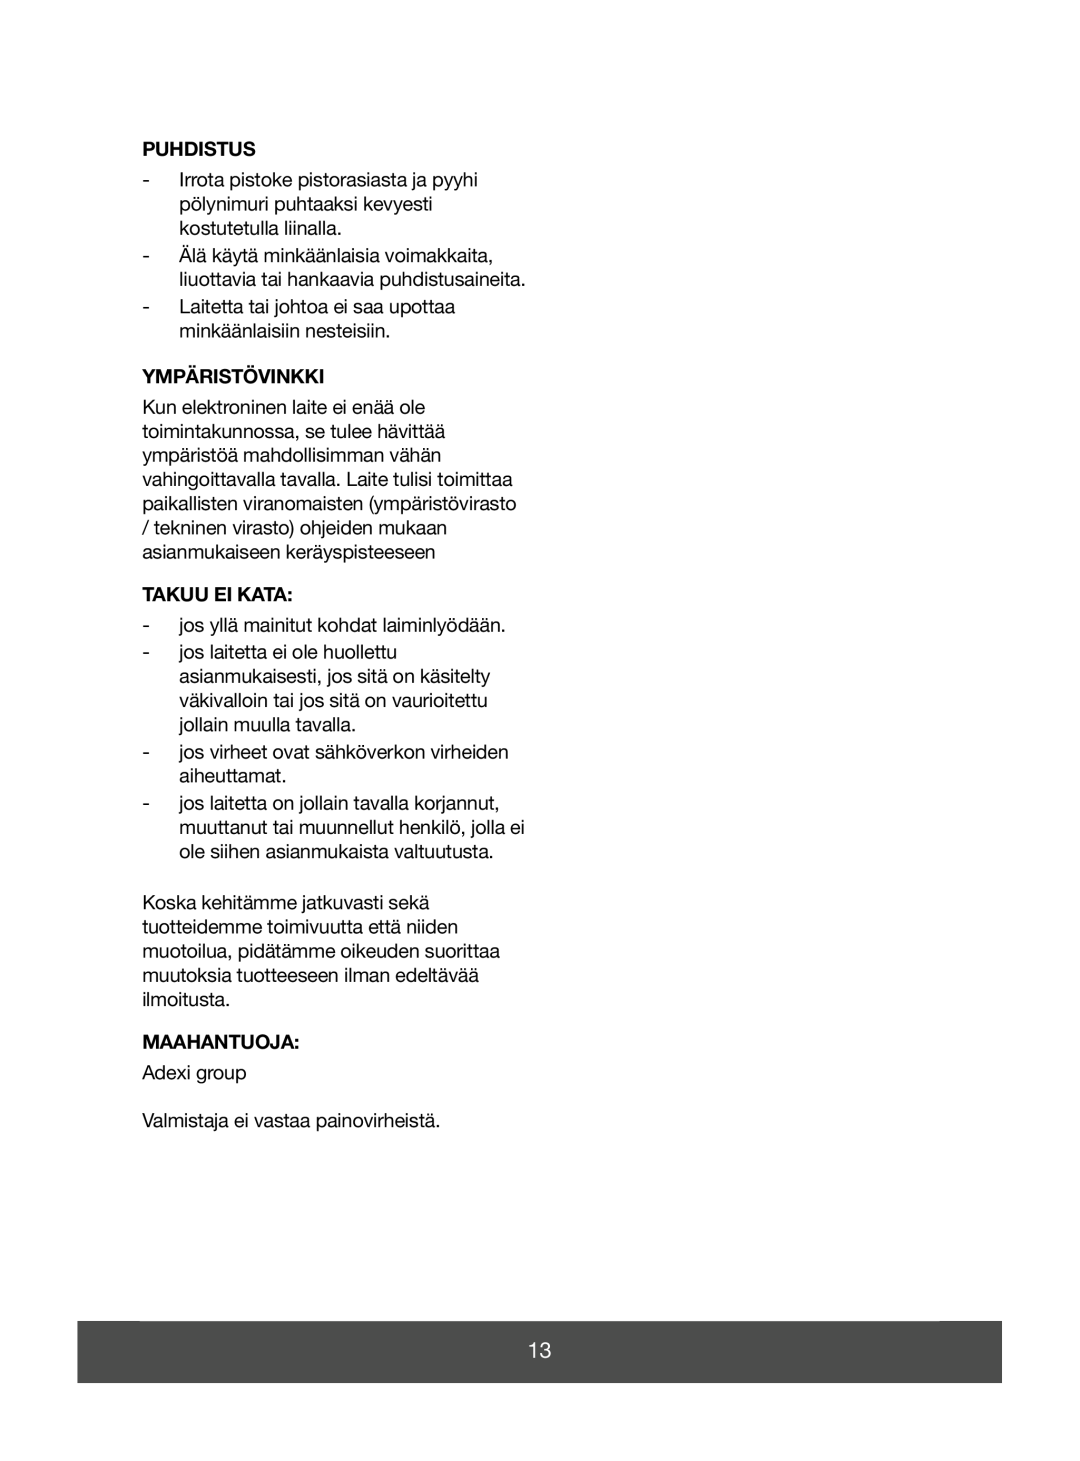 Melissa 640-051 manual Puhdistus, Ympäristövinkki, Takuu Ei Kata, Maahantuoja 